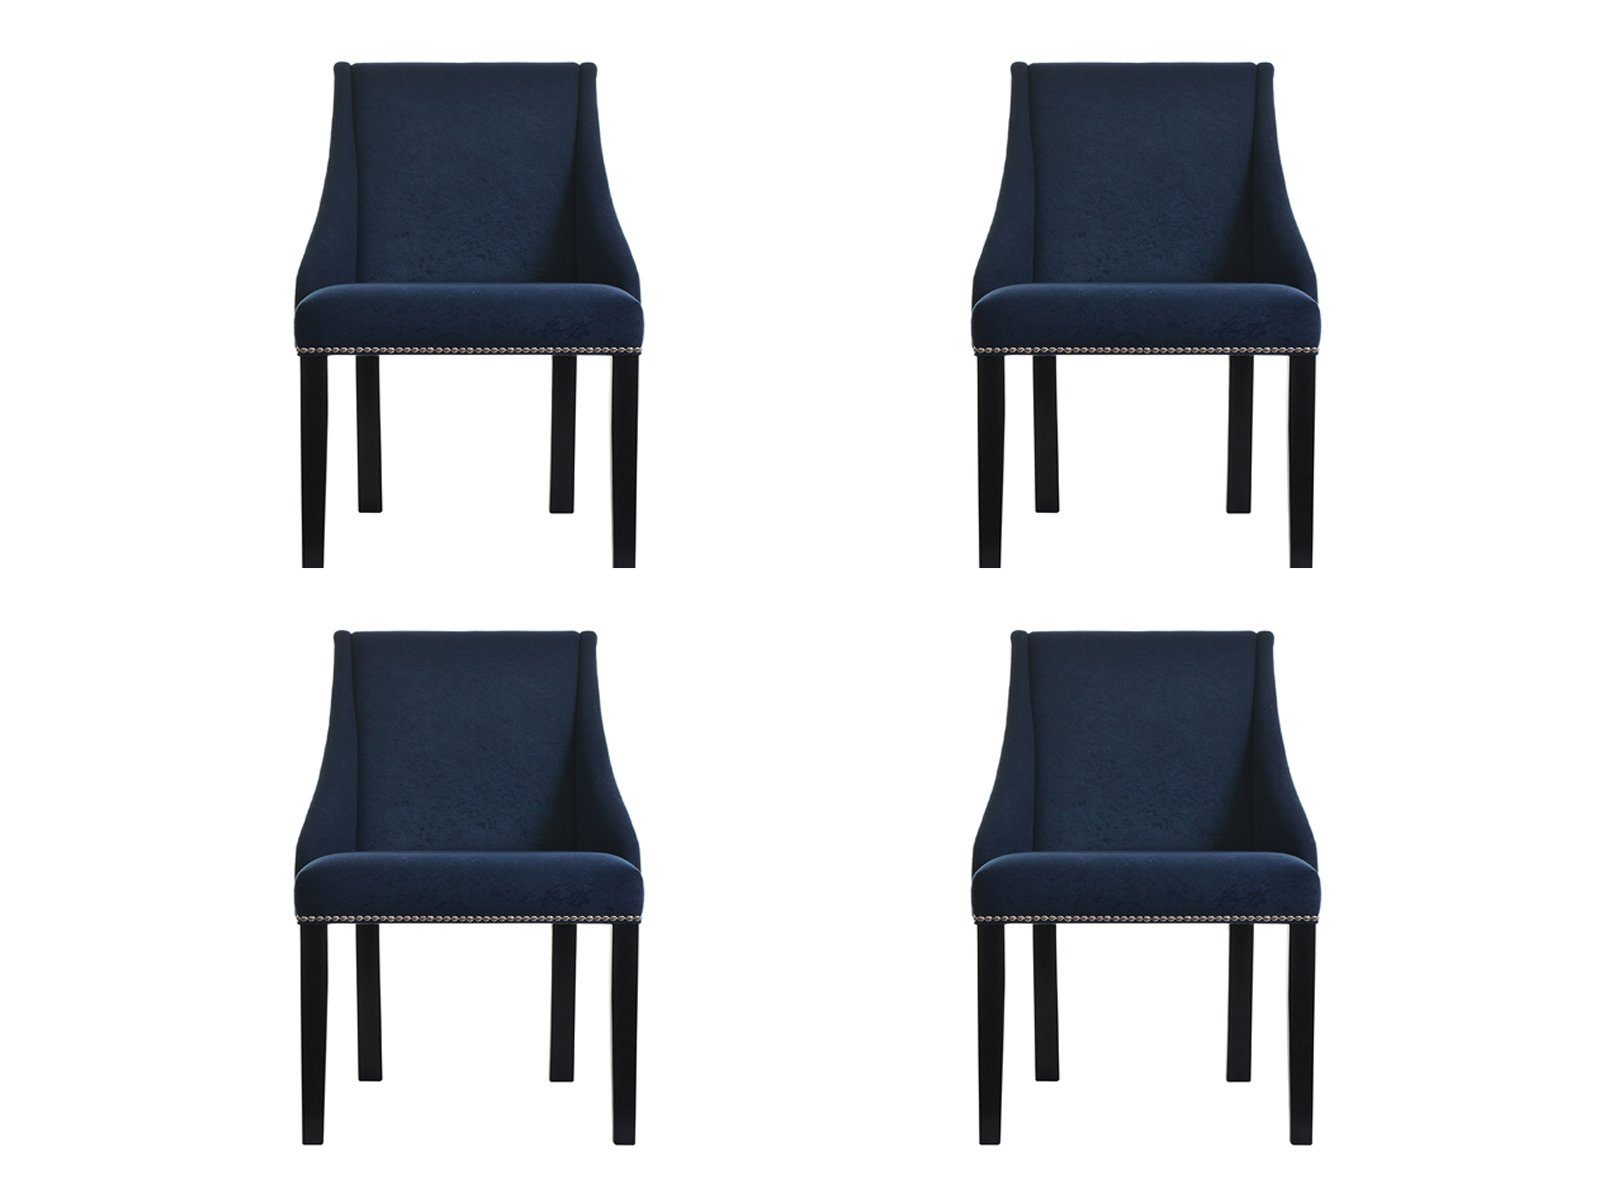 JVmoebel Stuhl, 4x Sessel Design Polster Stühle Stuhl Chesterfield Klassische Lehn Leder Flora